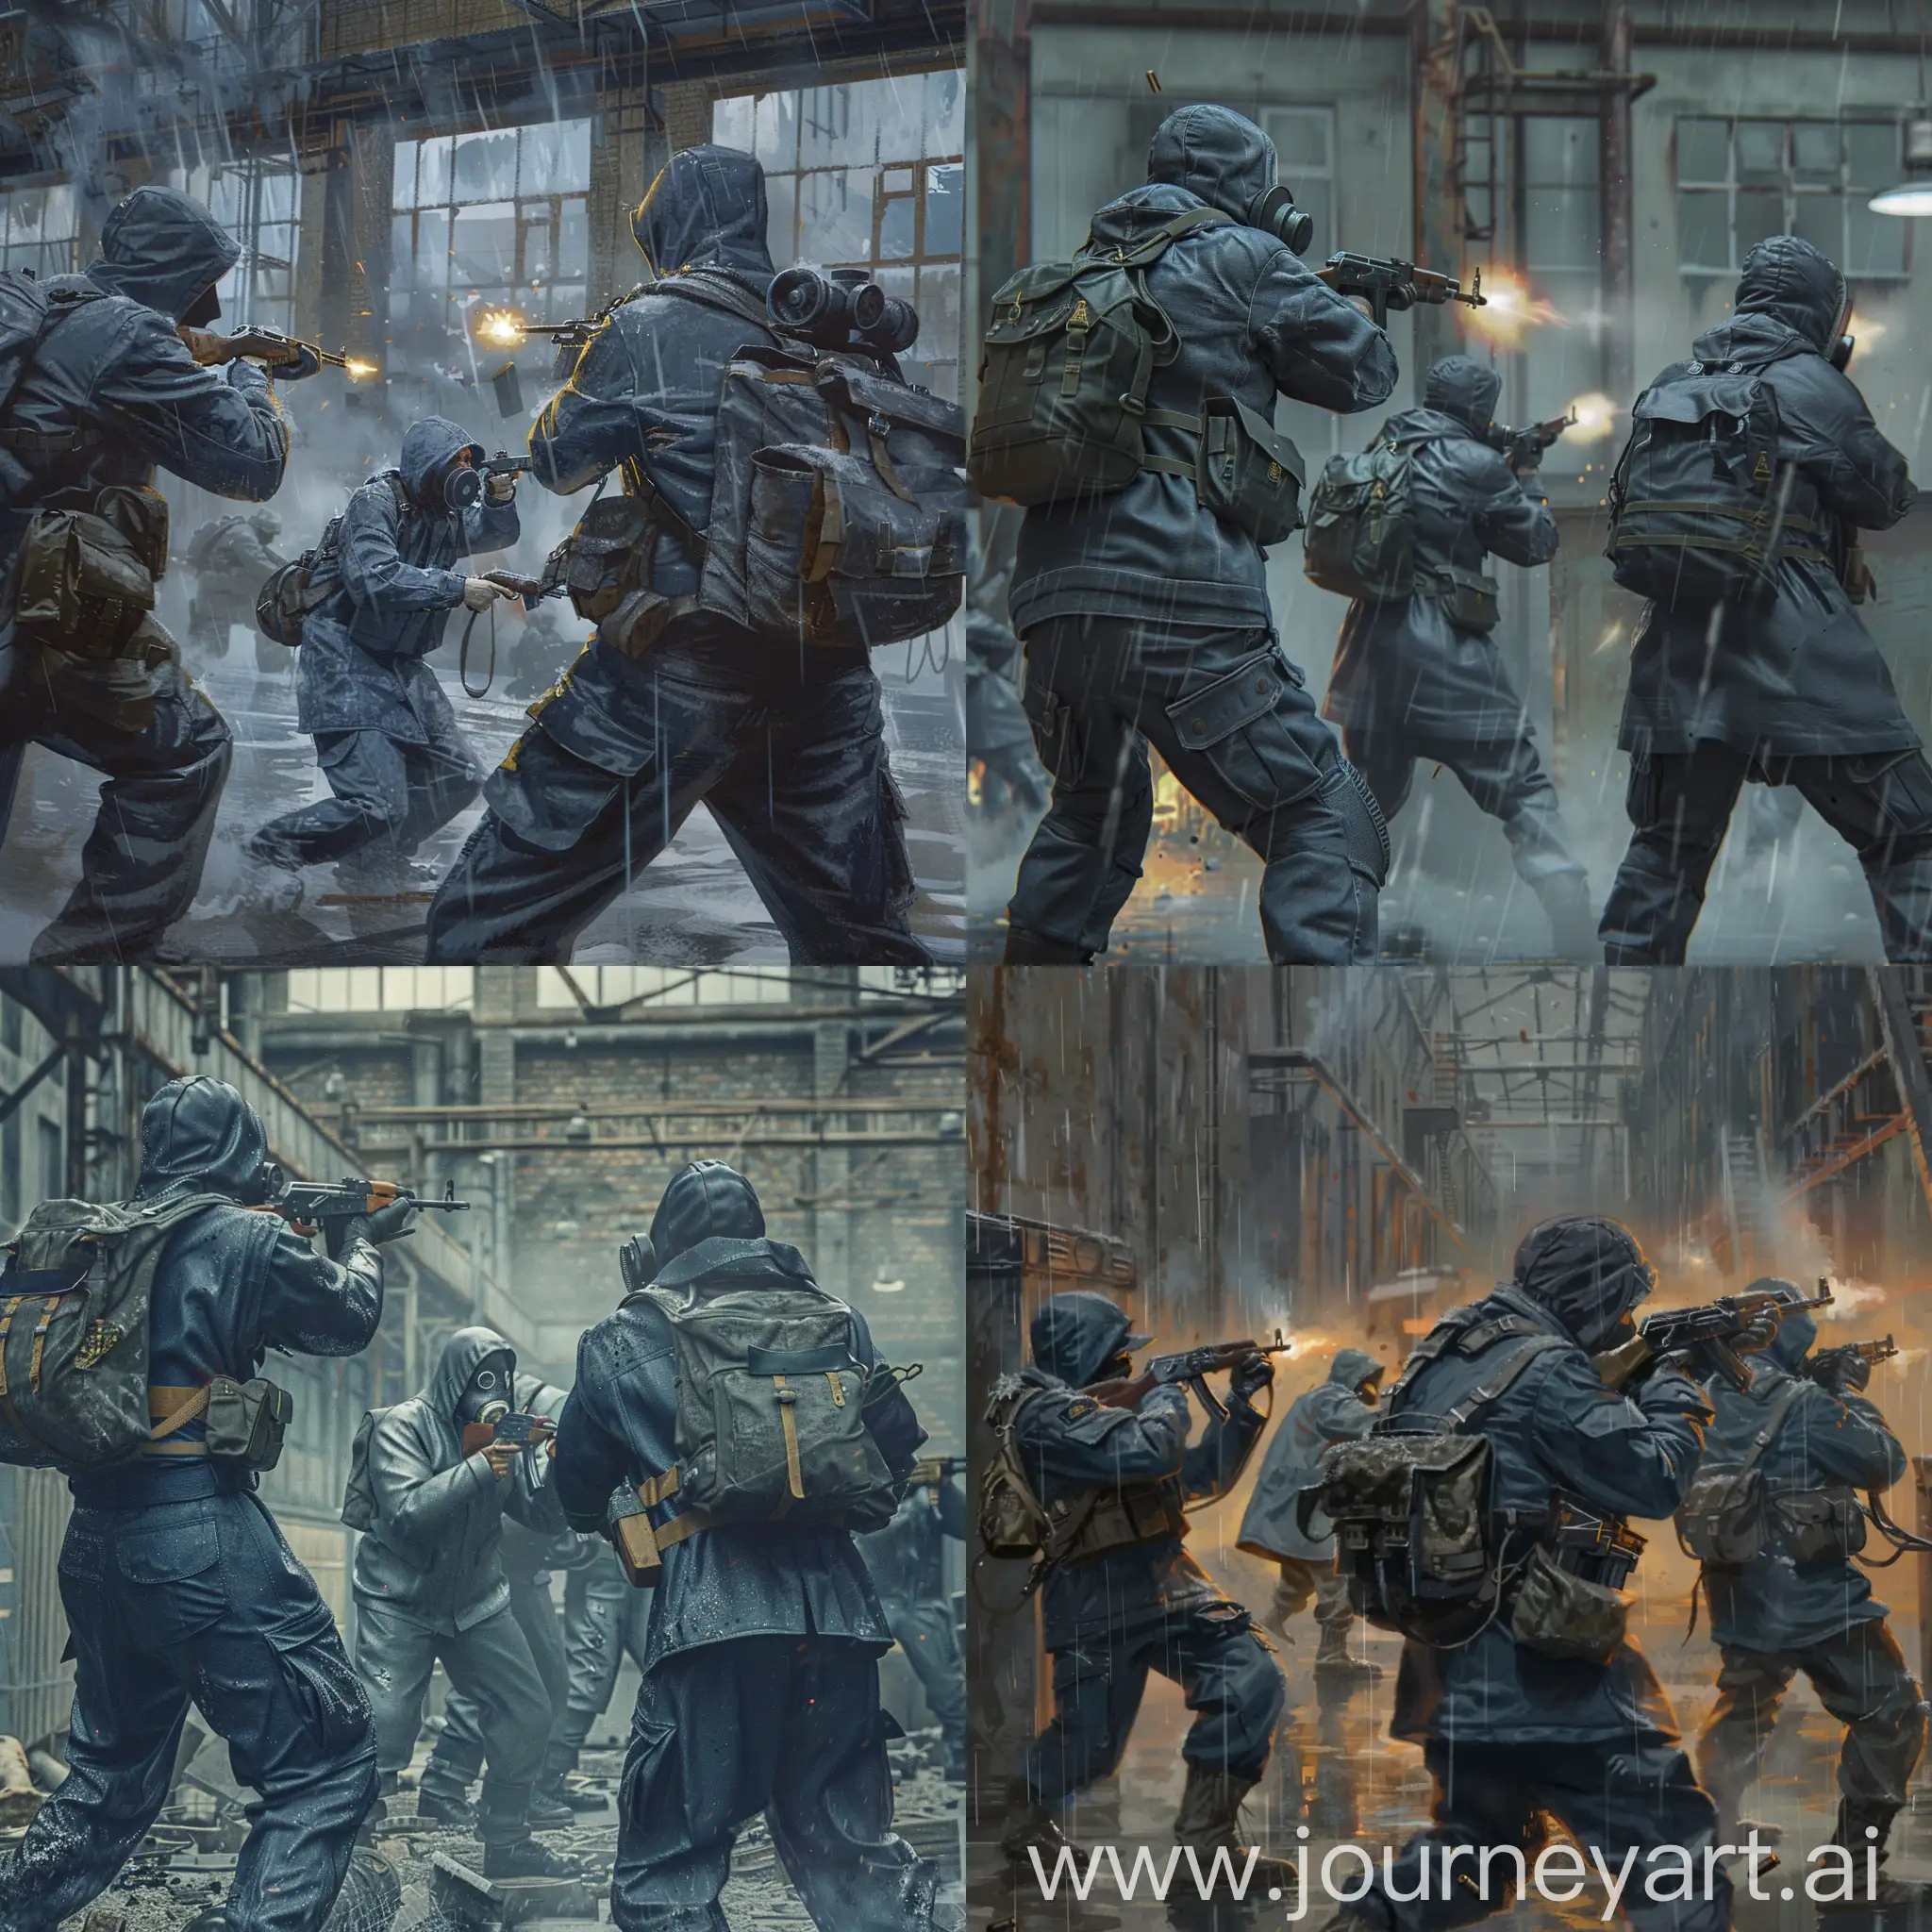 Mercenaries-in-Action-Urban-Combat-in-Abandoned-Soviet-Factory